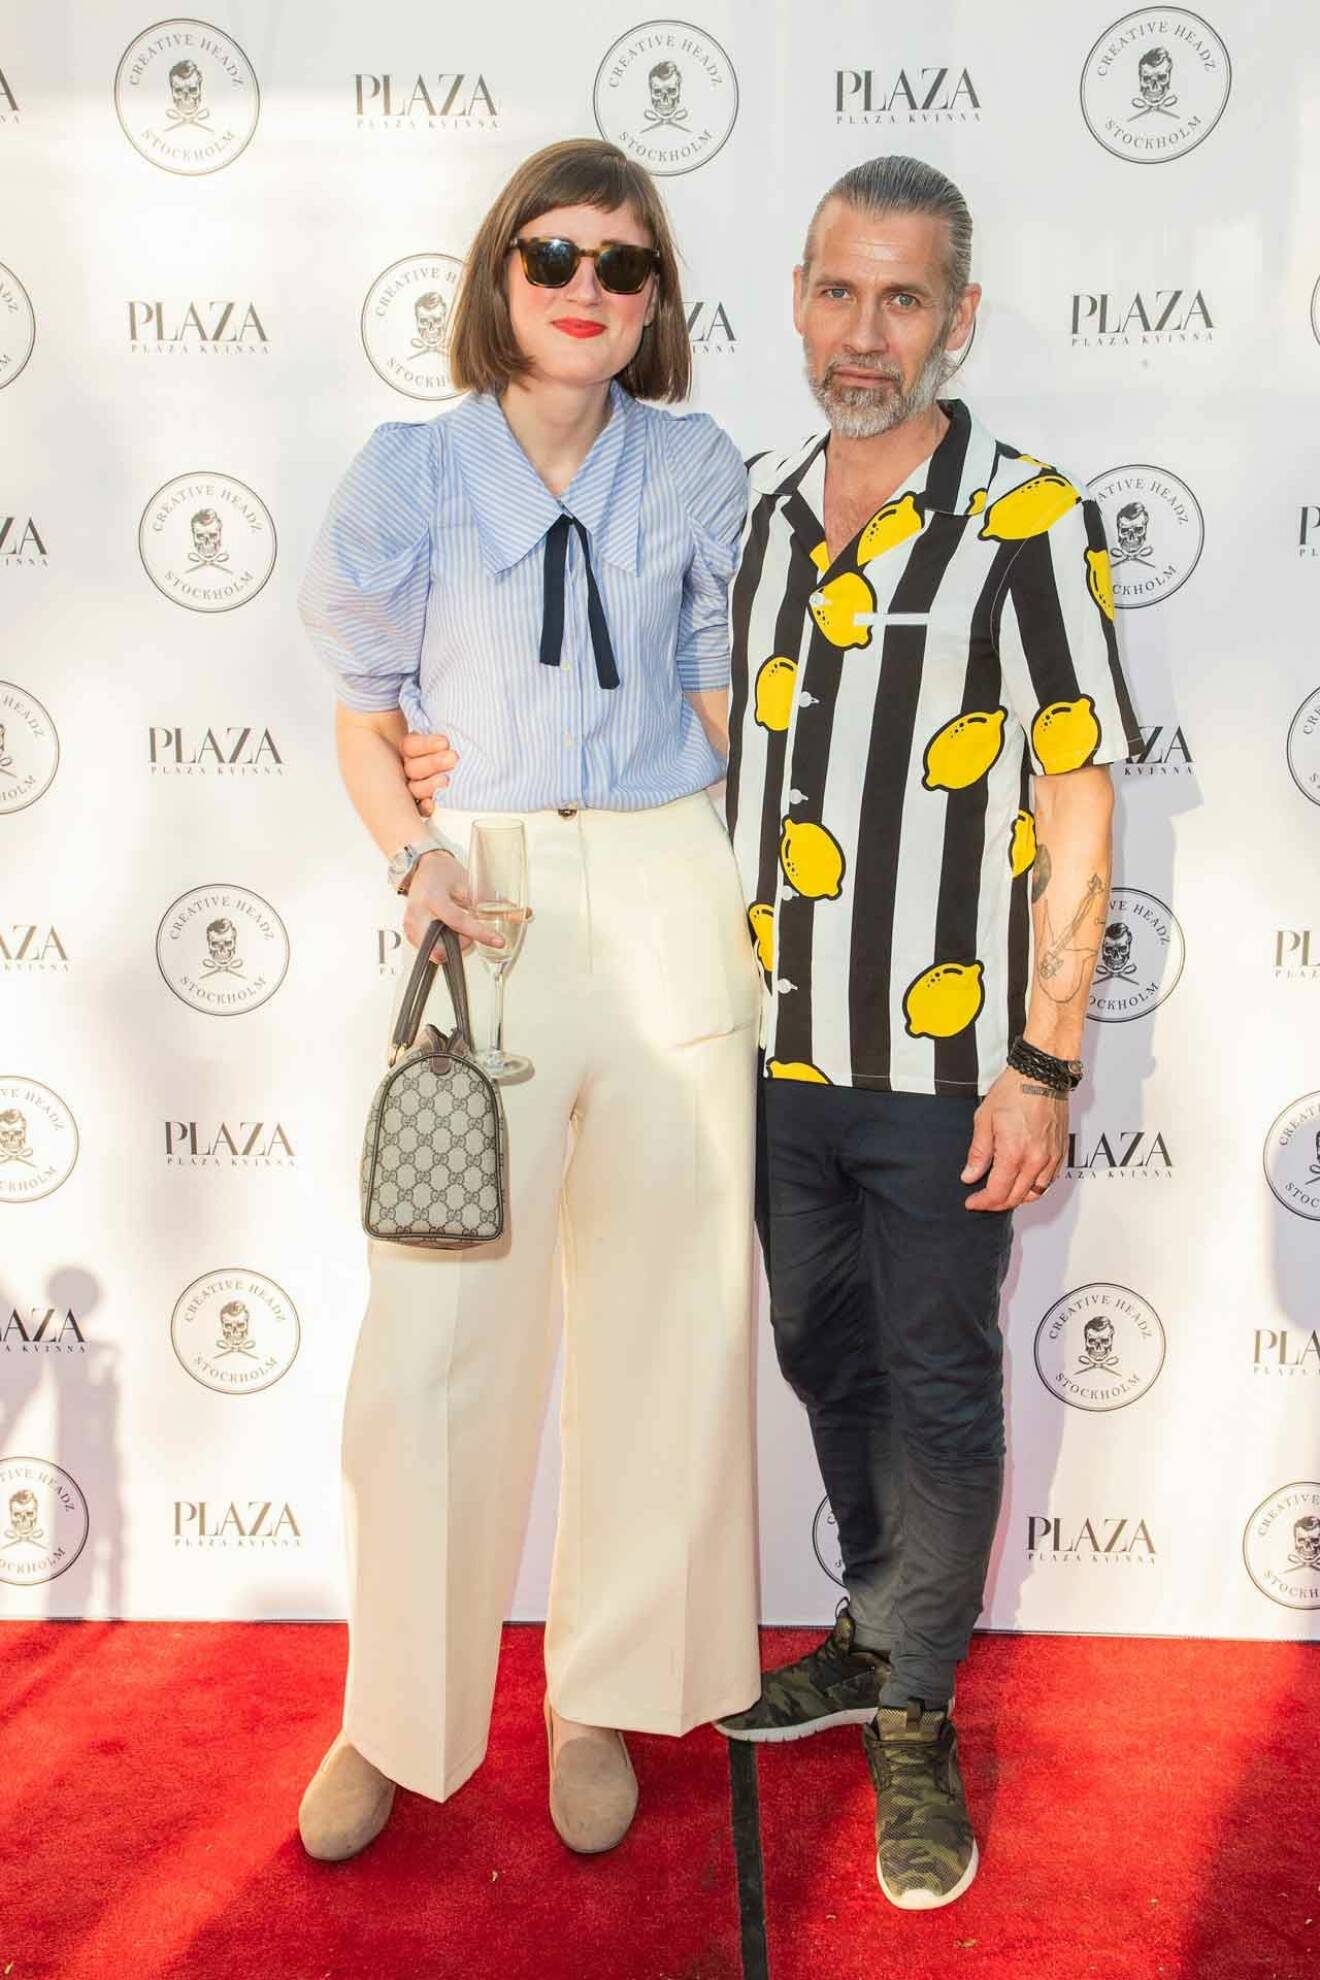 Plaza Kvinnas chefredaktör Caroline Thörnholm och Subitos Daniel Lindroth, som följde kvällens klädsel Lemonade.